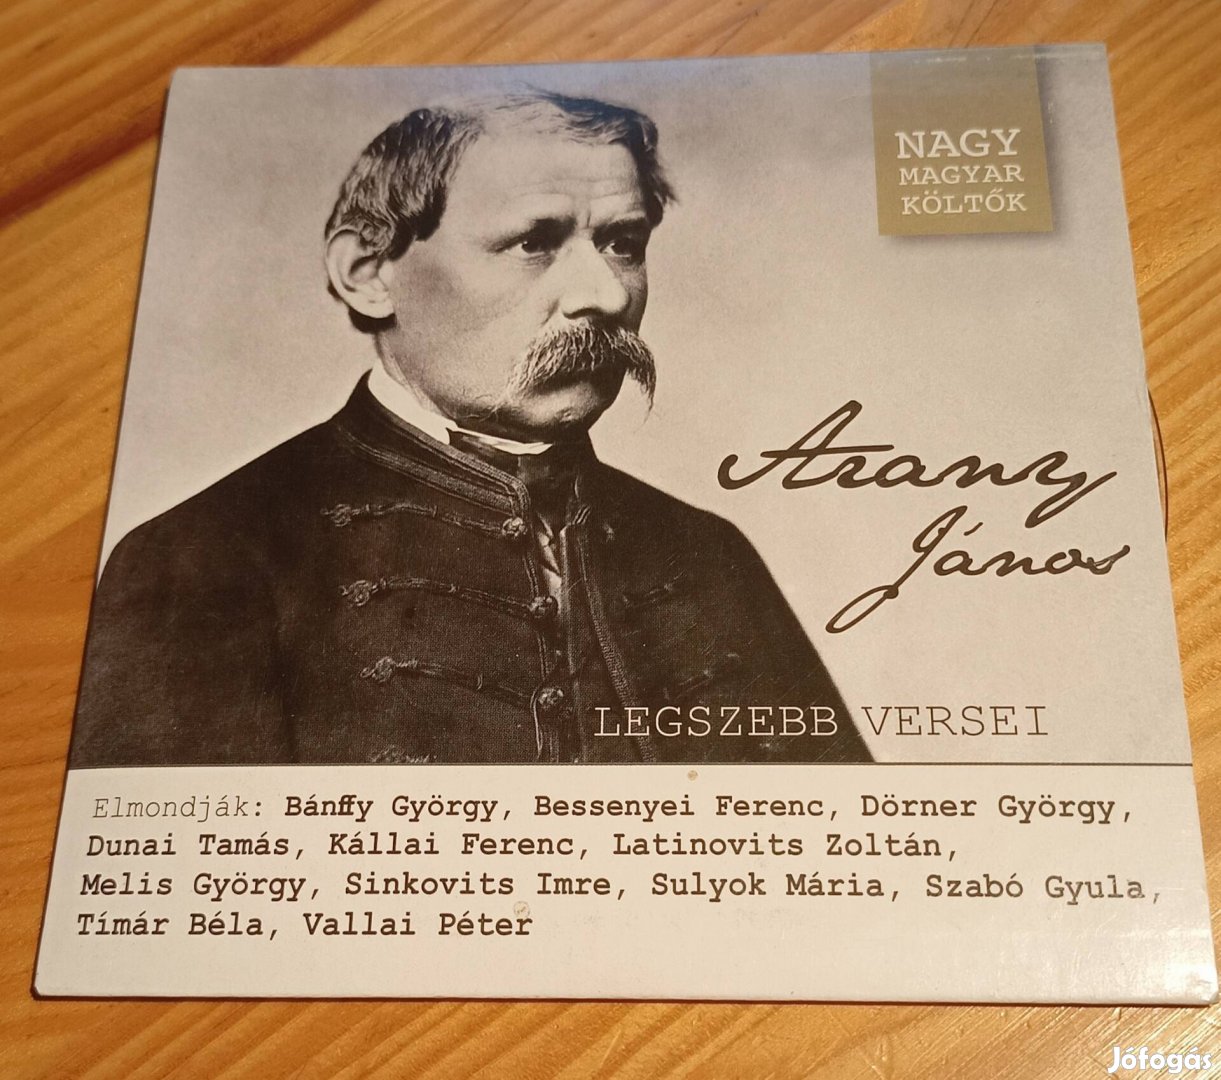 Arany János legszebb versei CD 